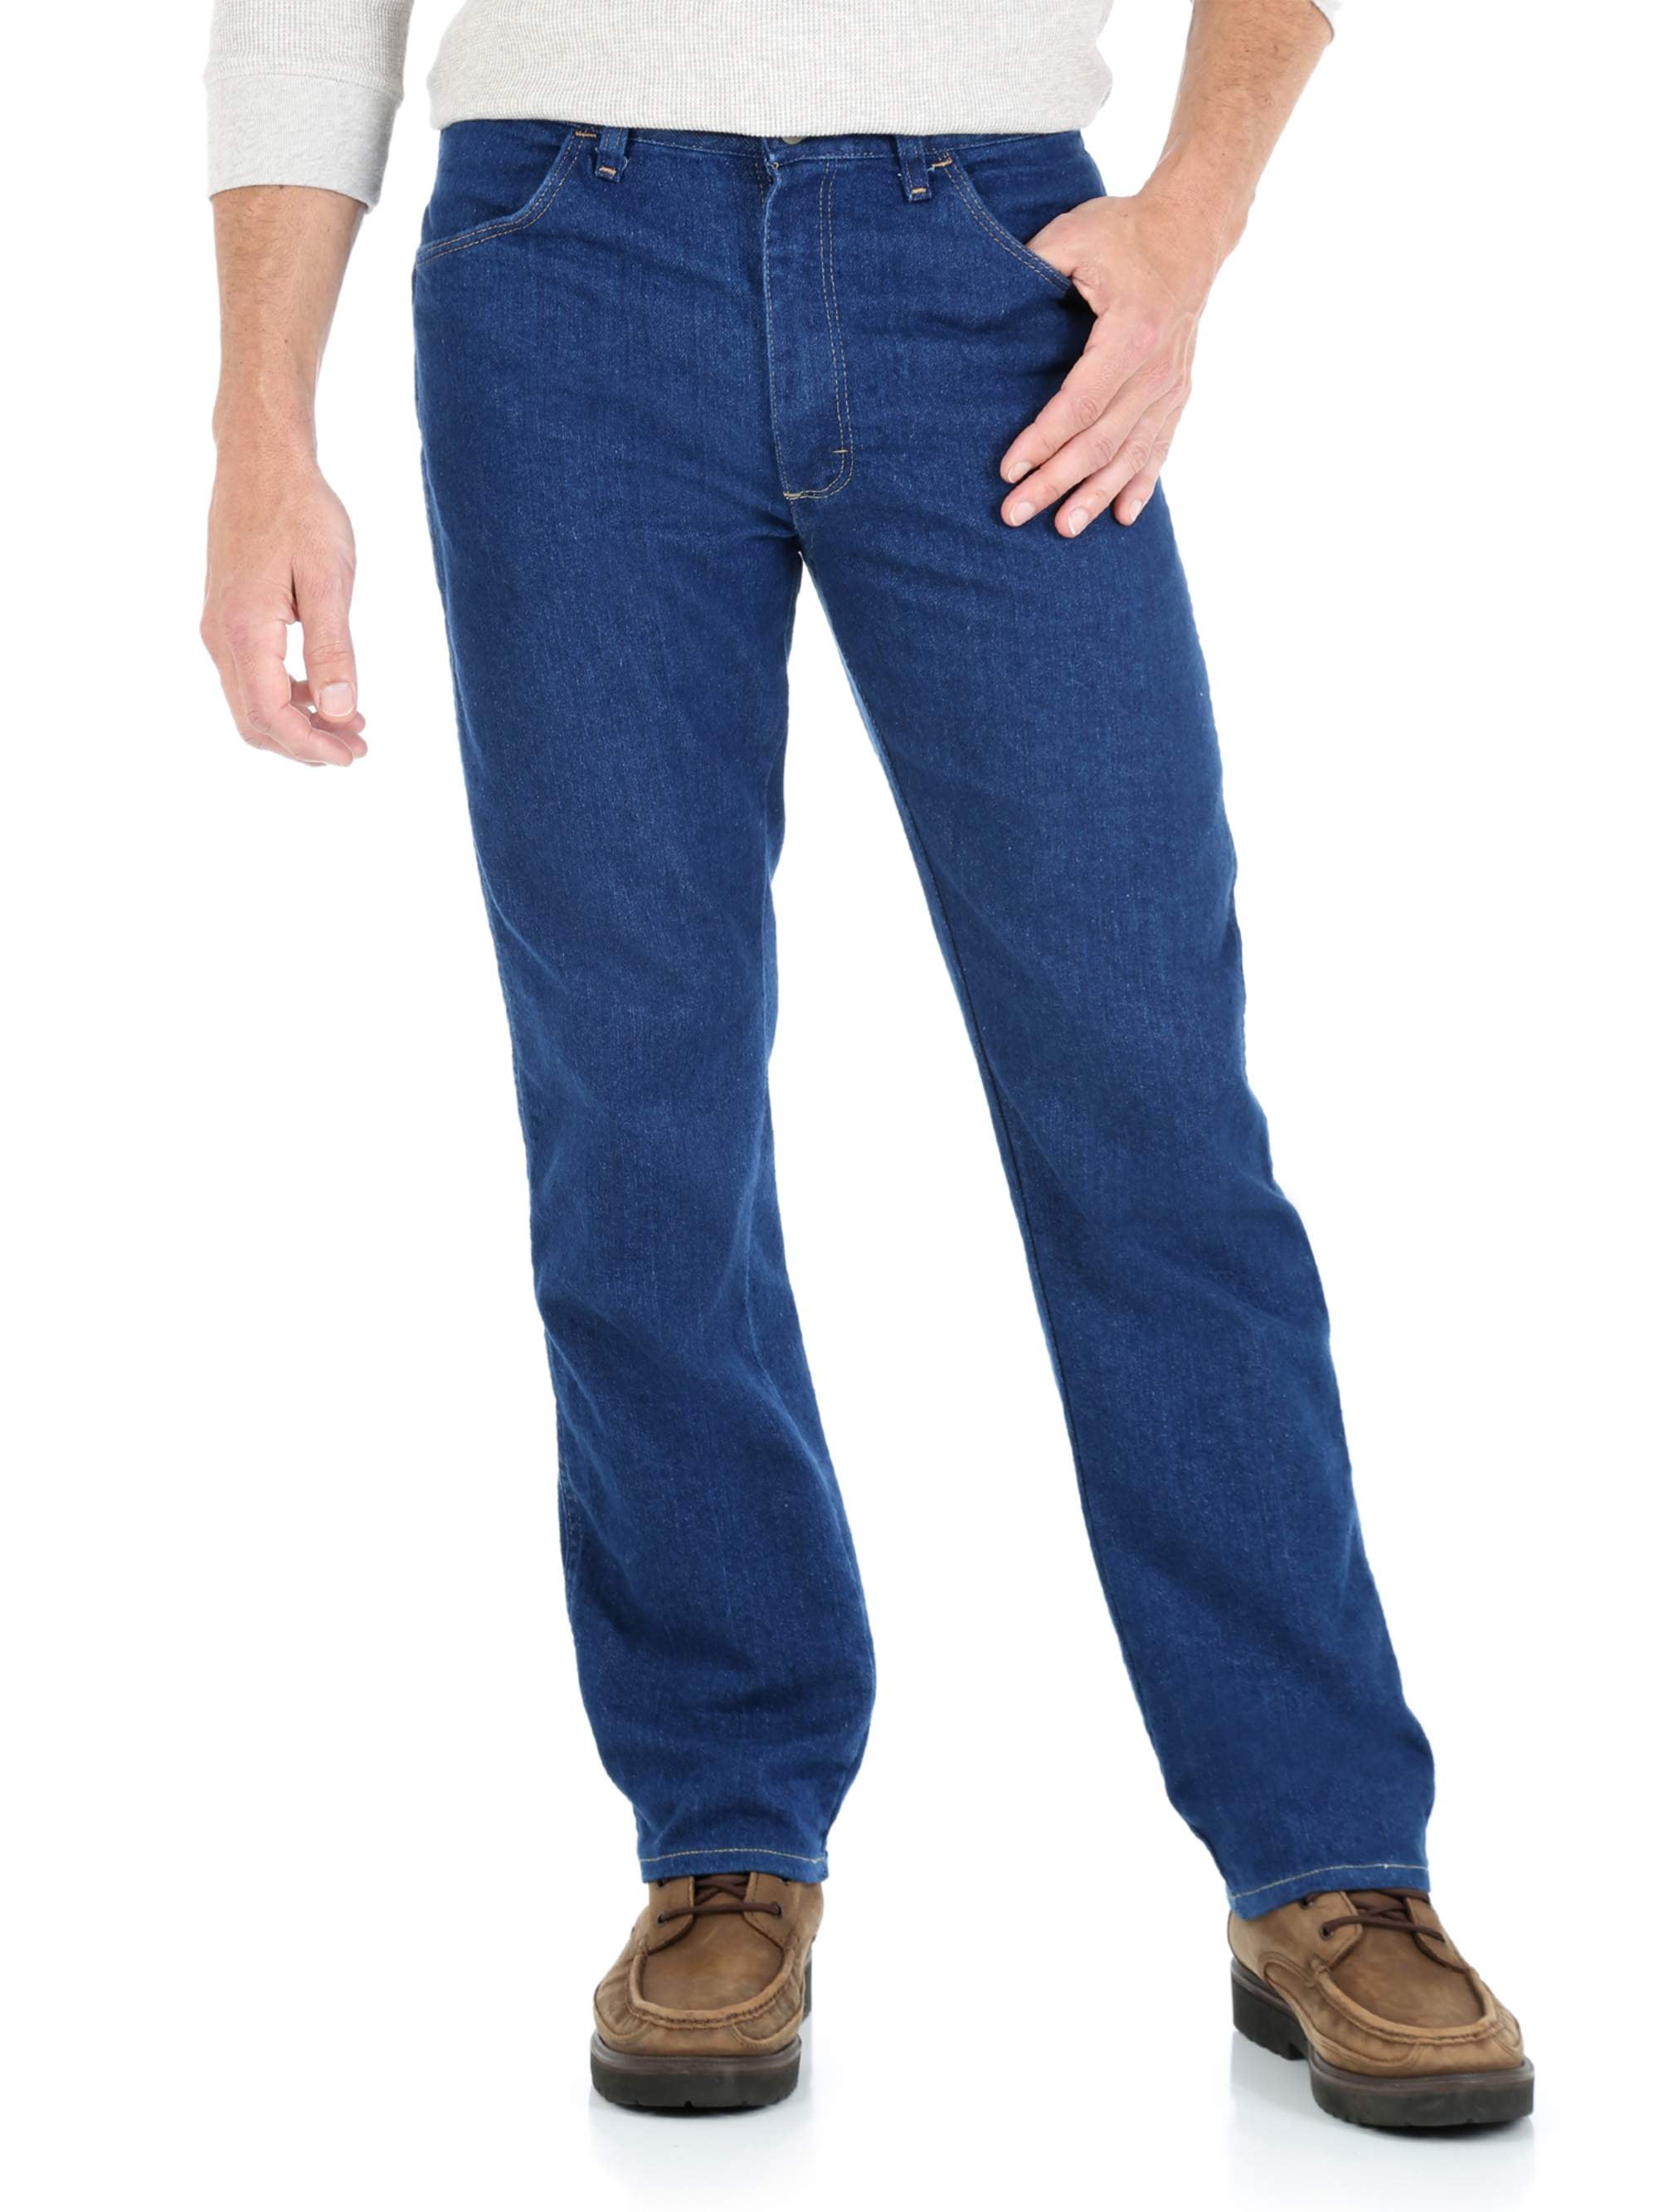 walmart wrangler jeans